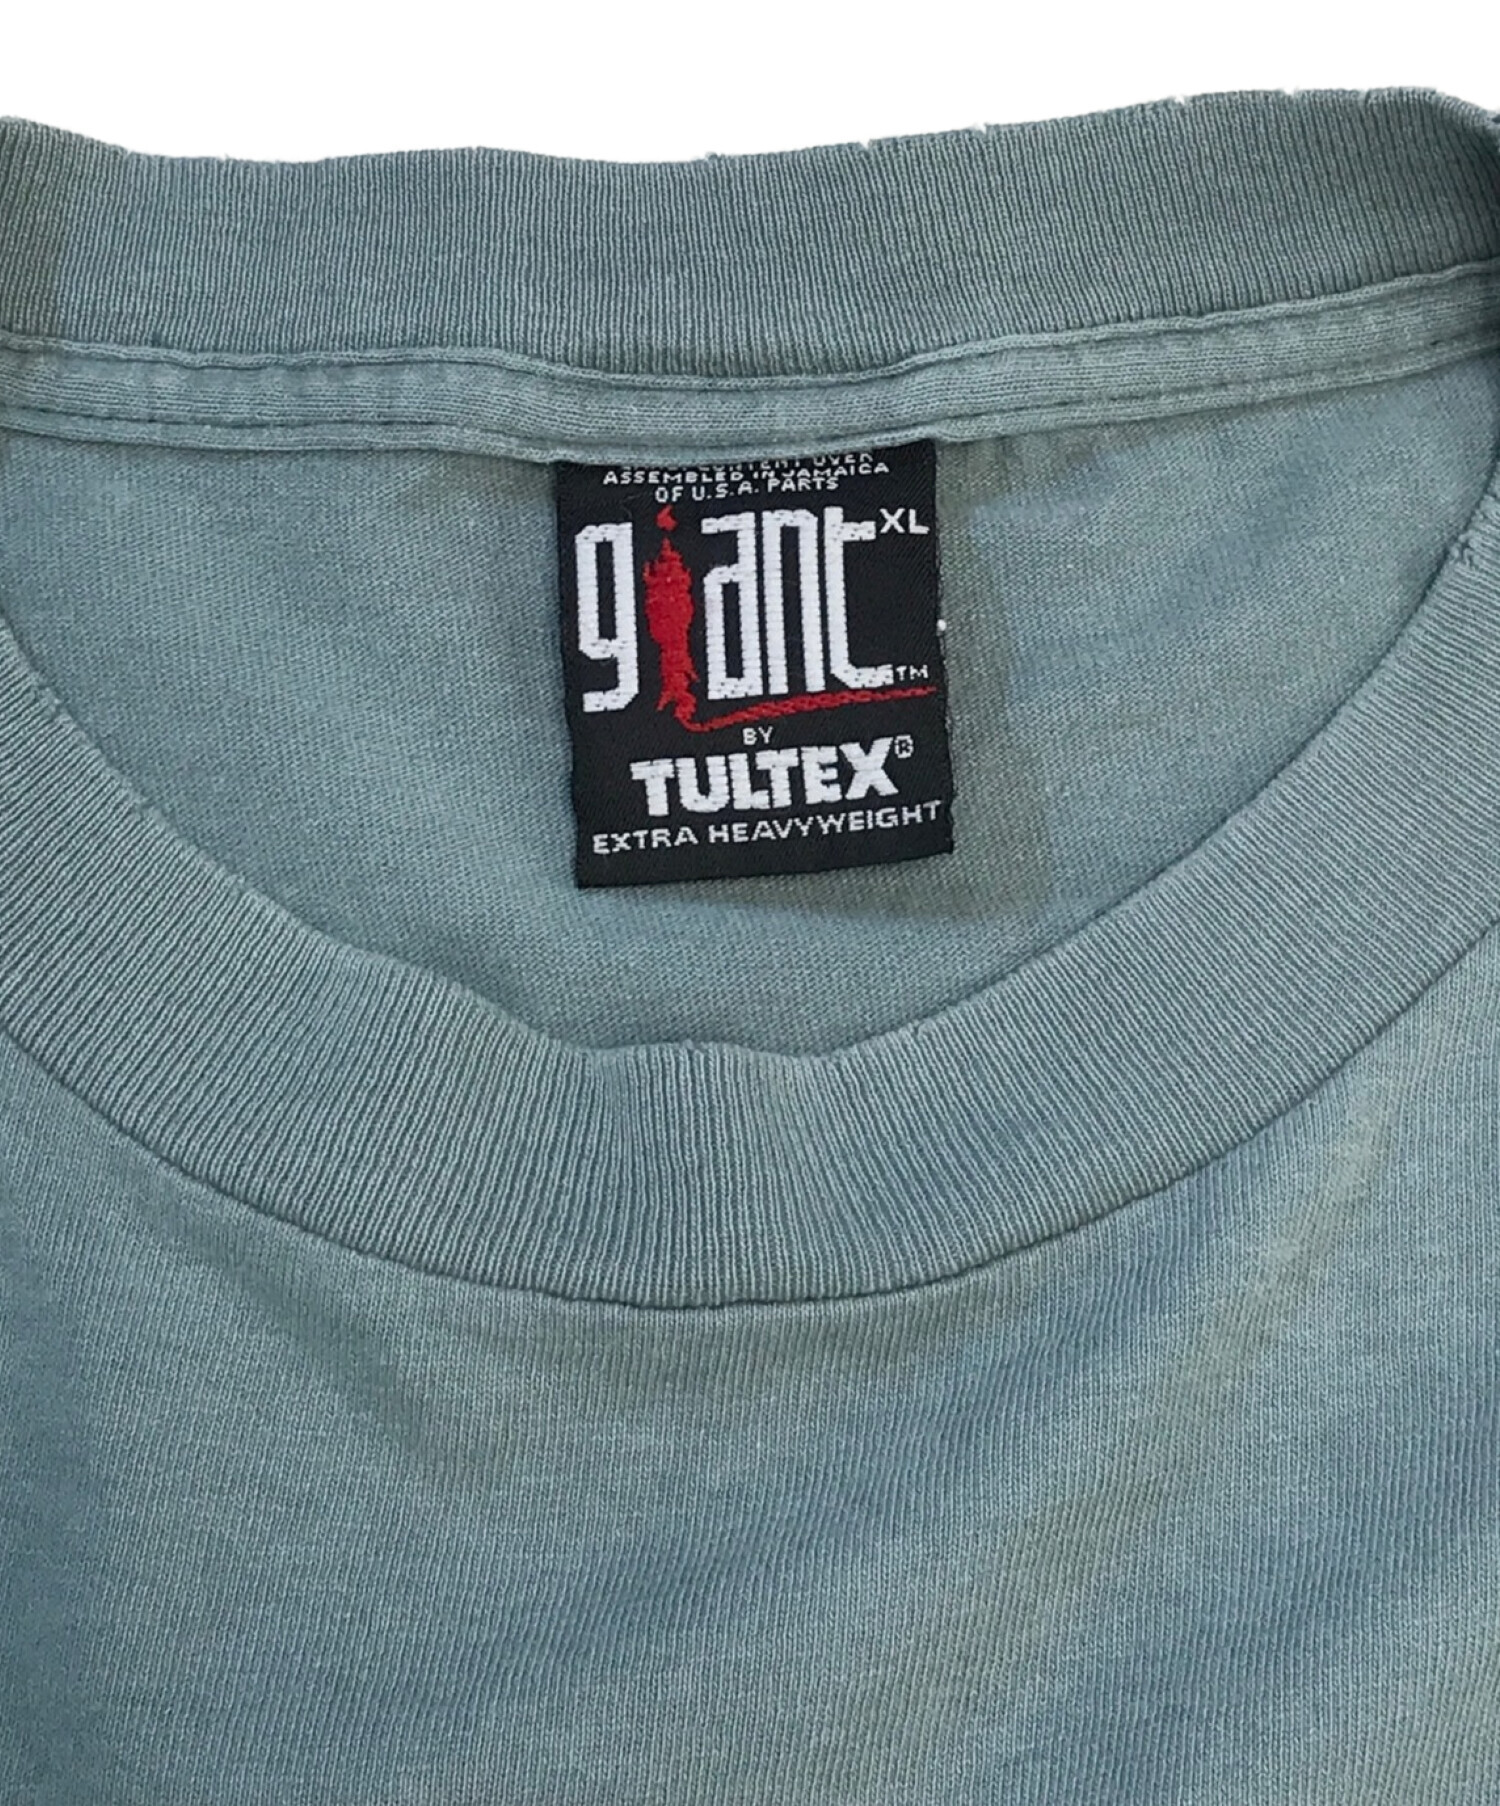 激レア 90s giant Tシャツ XL 刺繍 ボディーメーカー-